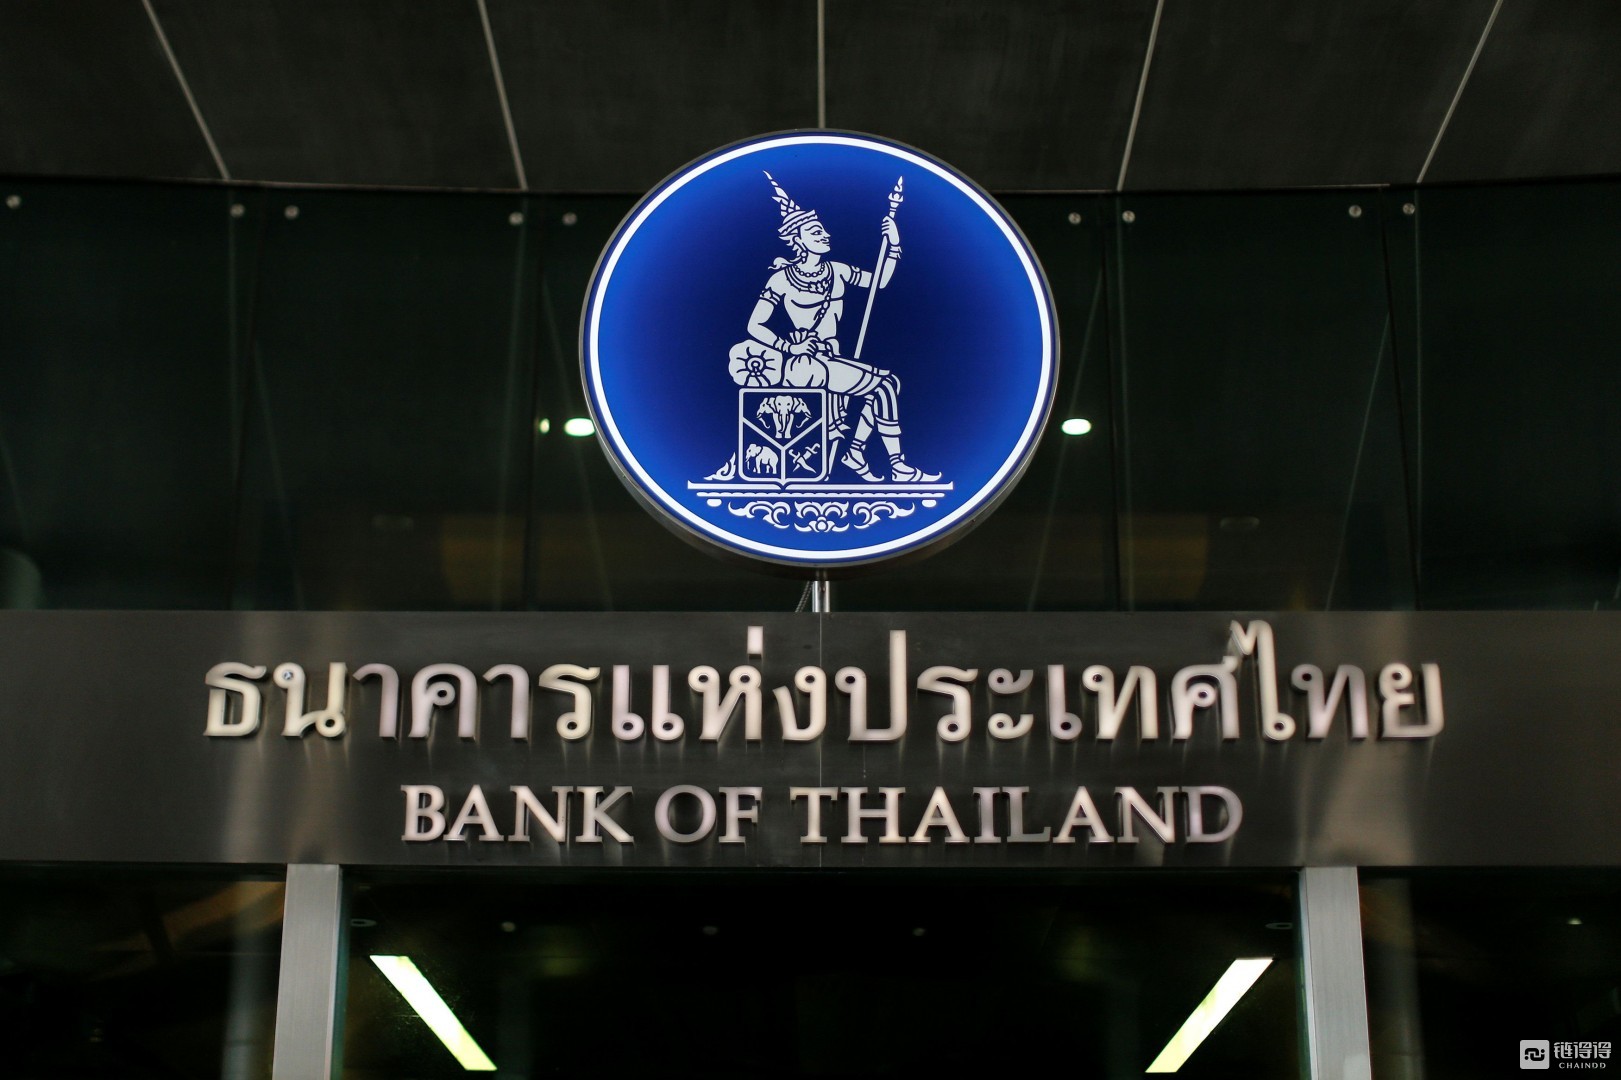 【链得得早报】泰国央行拟用区块链技术发债和发售数字货币